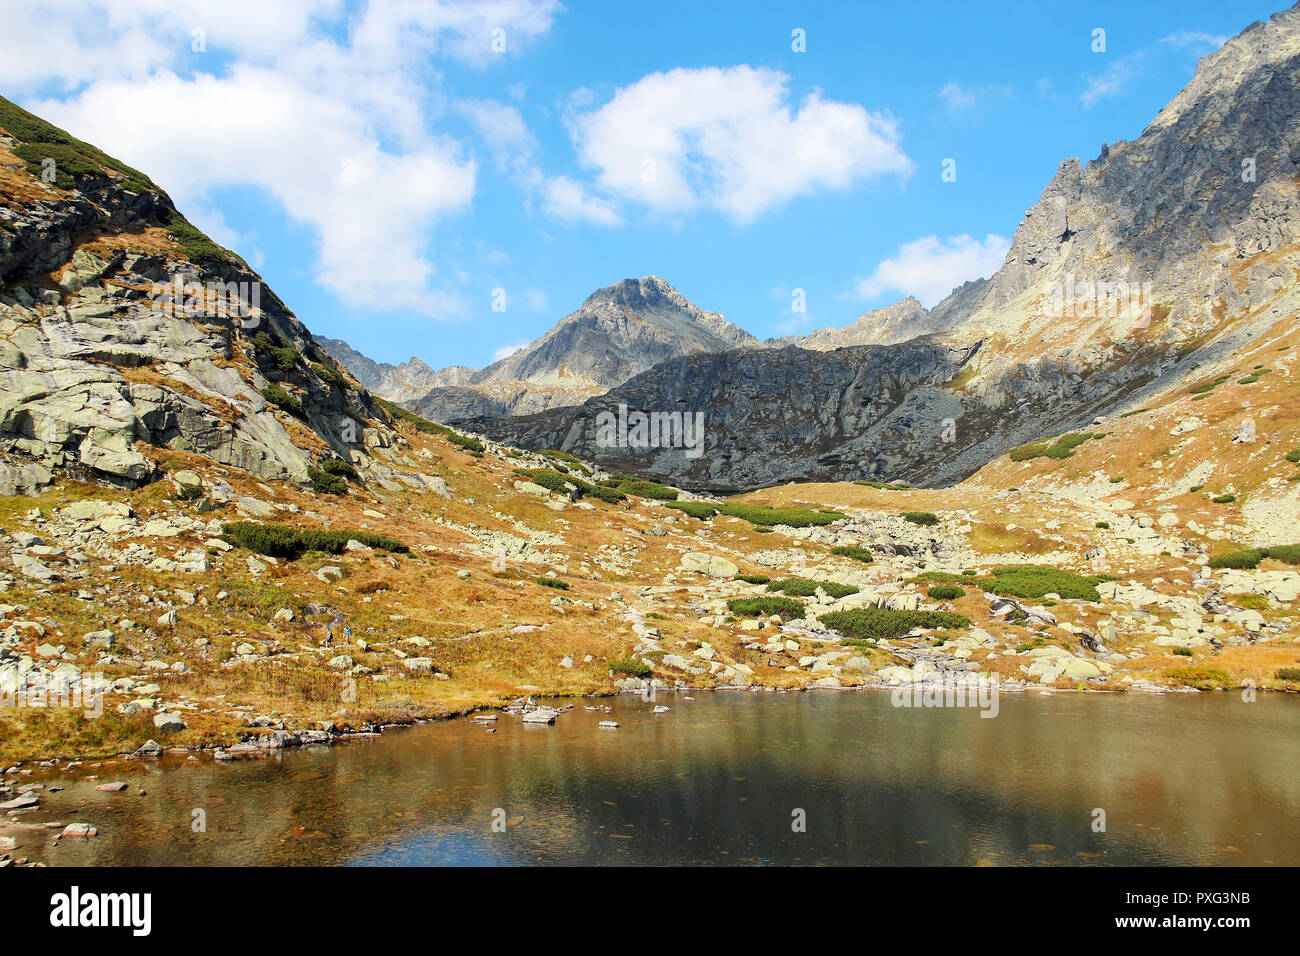 Pleso nad Skokom, beautiful lake in Mlynicka Valley, High Tatras (Vysoke Tatry), Slovakia Stock Photo